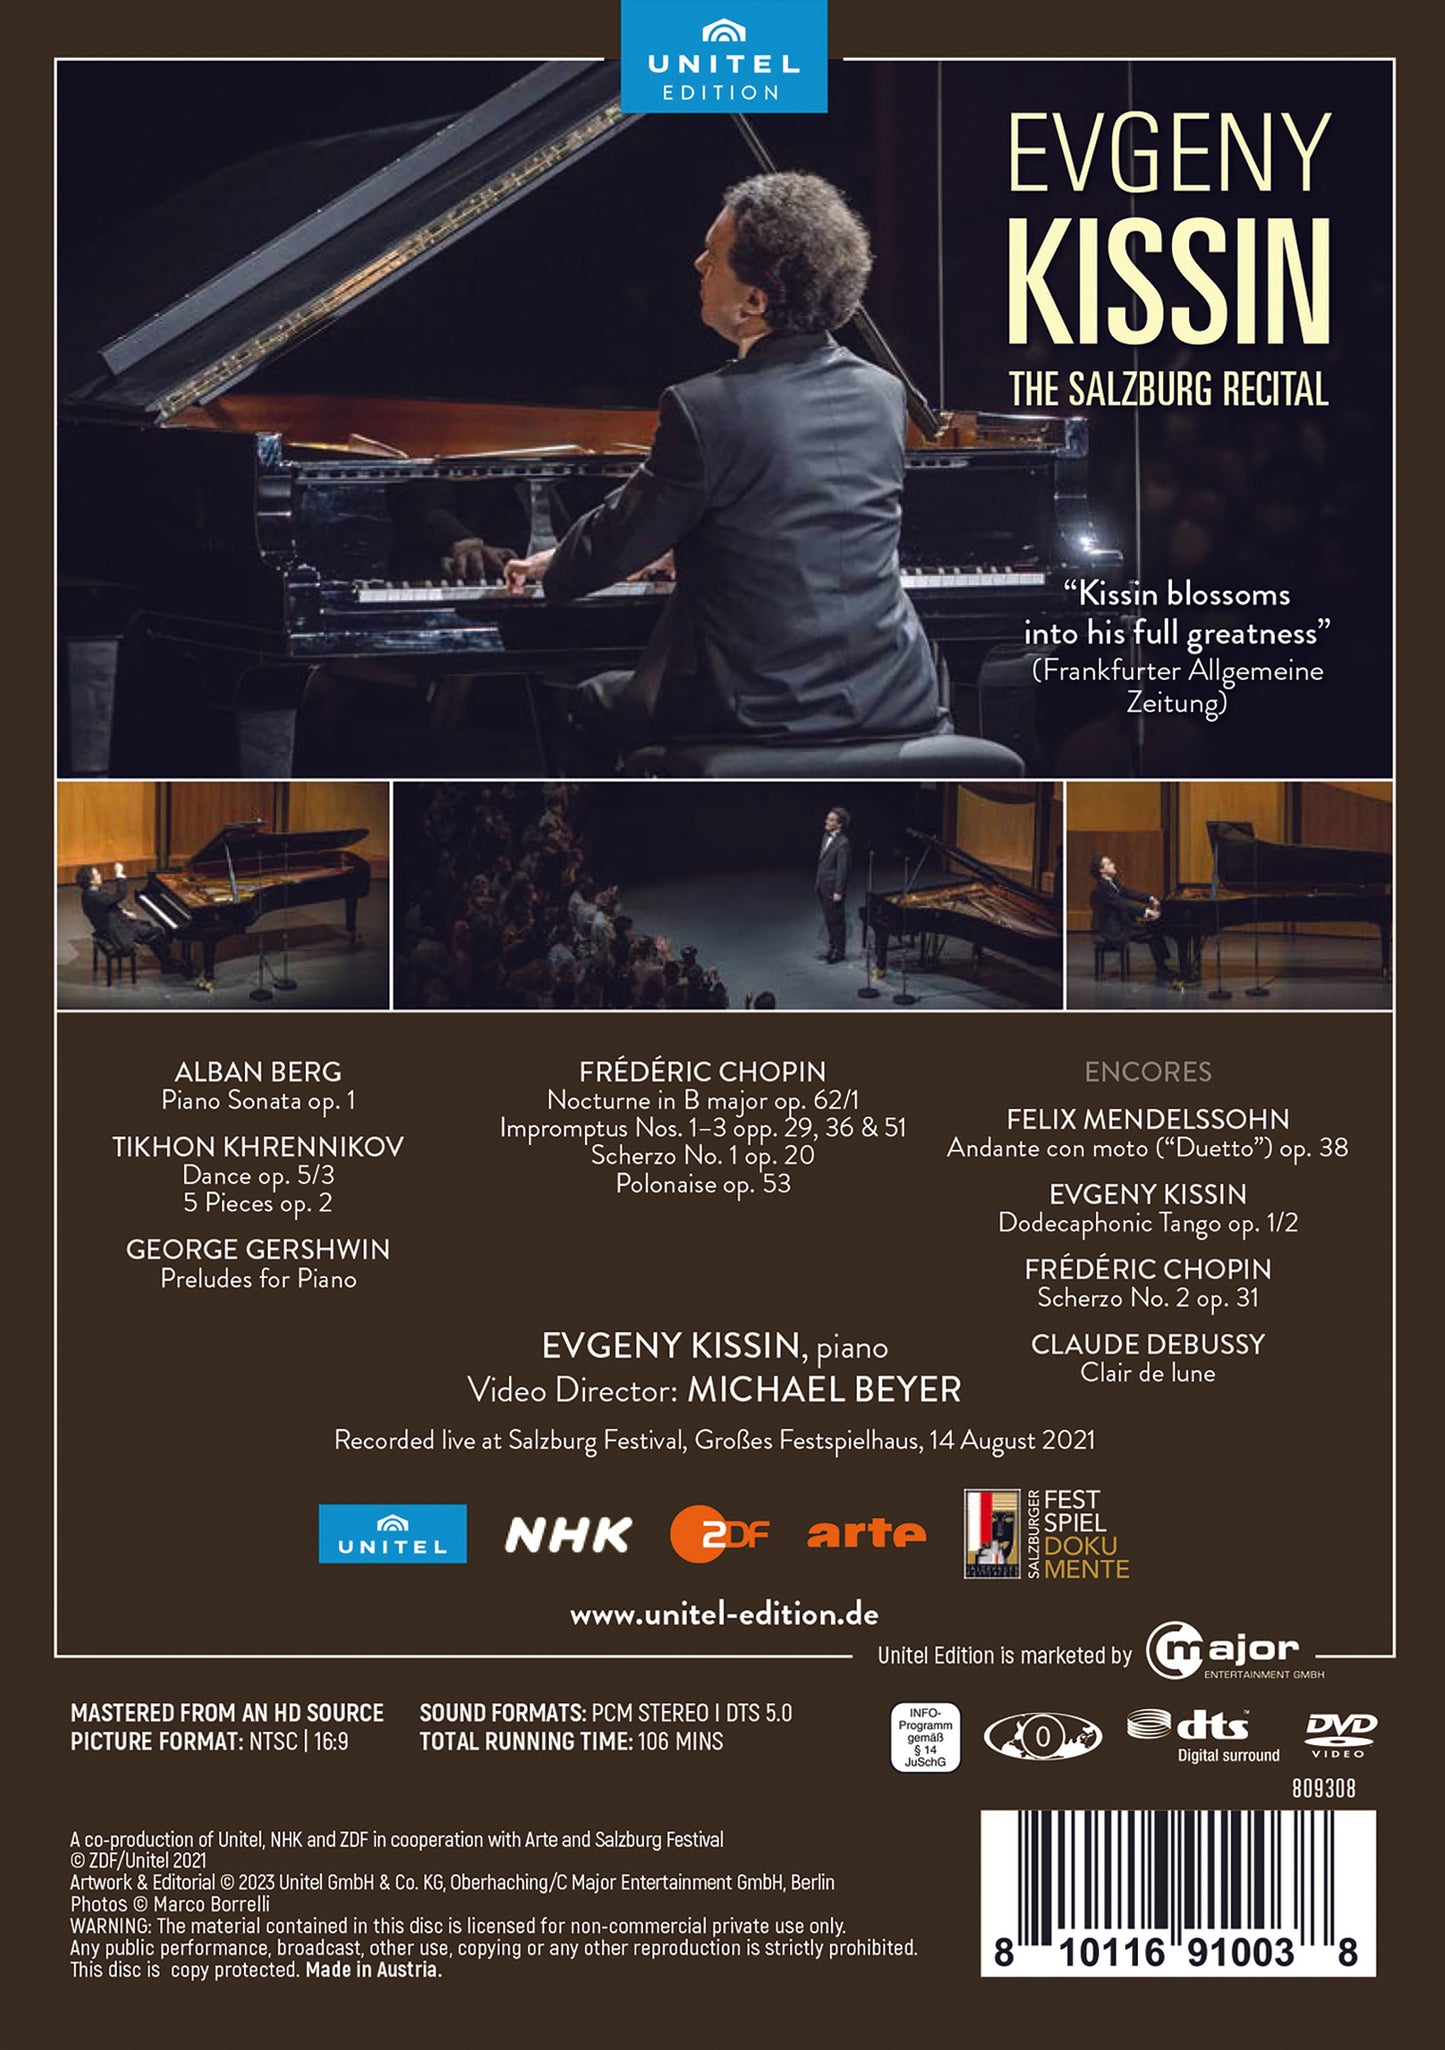 Kissin: The Salzburg Recital